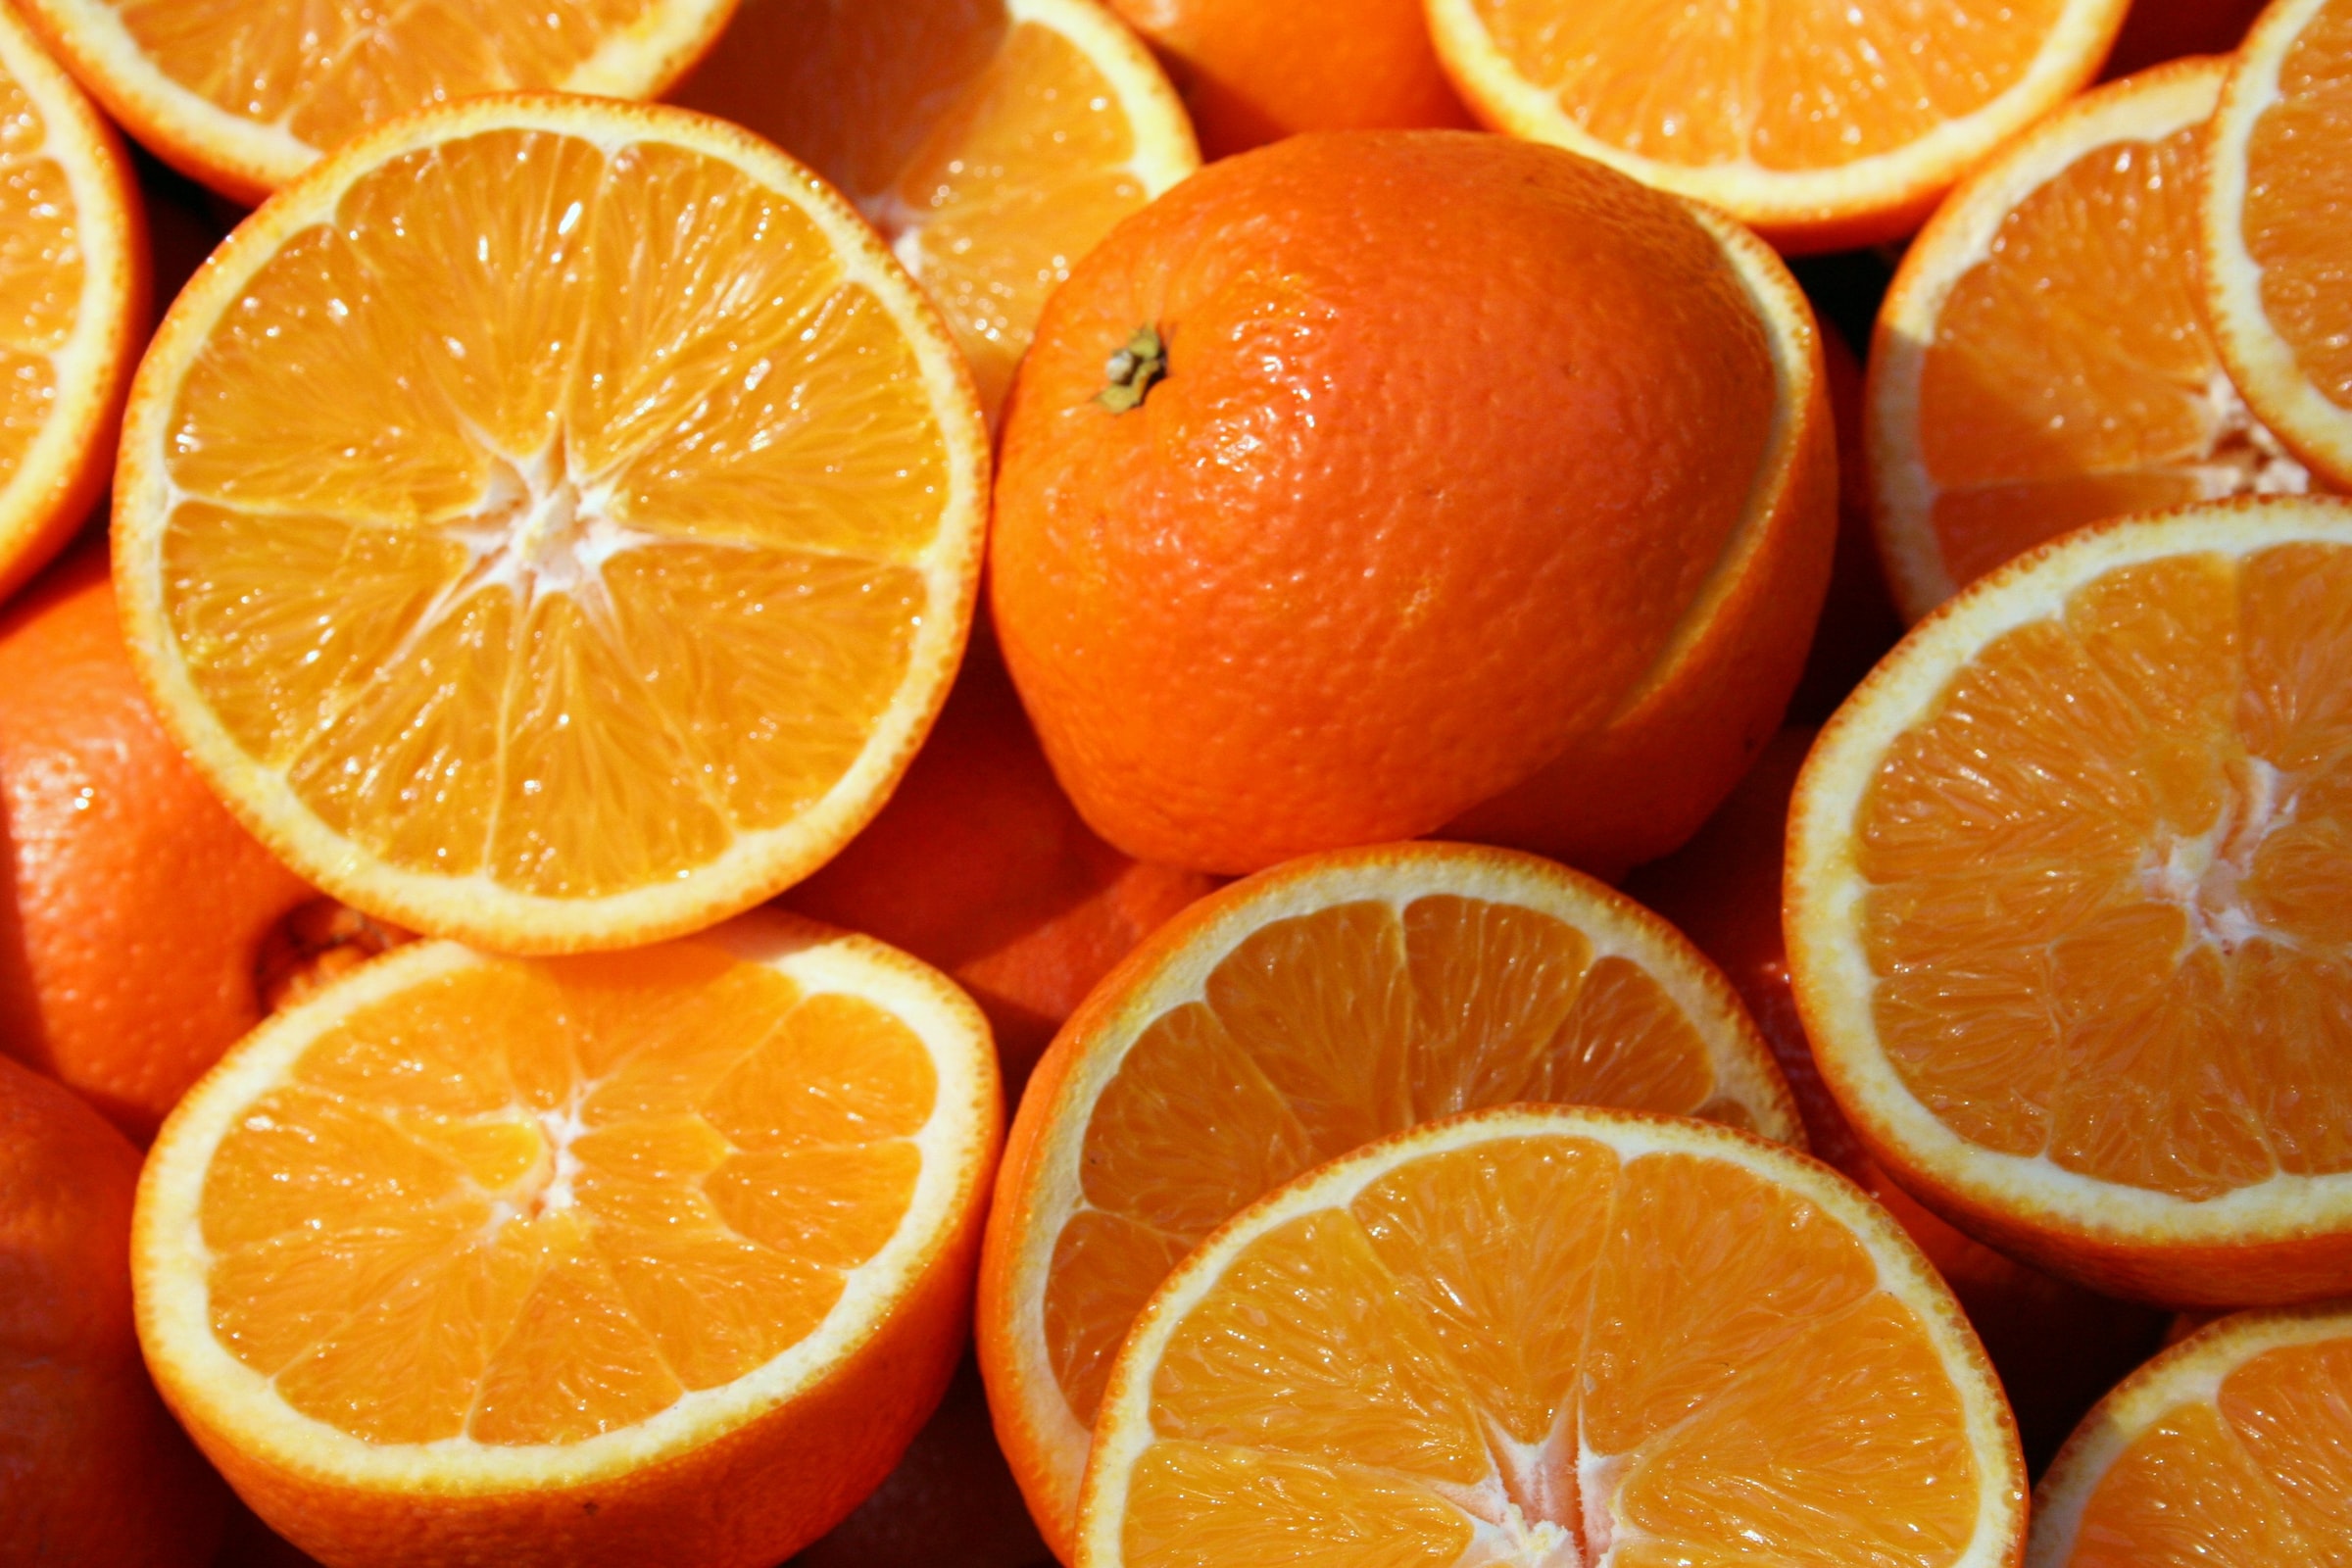 Vier Reihen von jeweils fünf aufgeschnittenen Orangen, welche vor einem gelben Hintergrund mit der aufgeschnittenen Seite zum Betrachter zeigen.